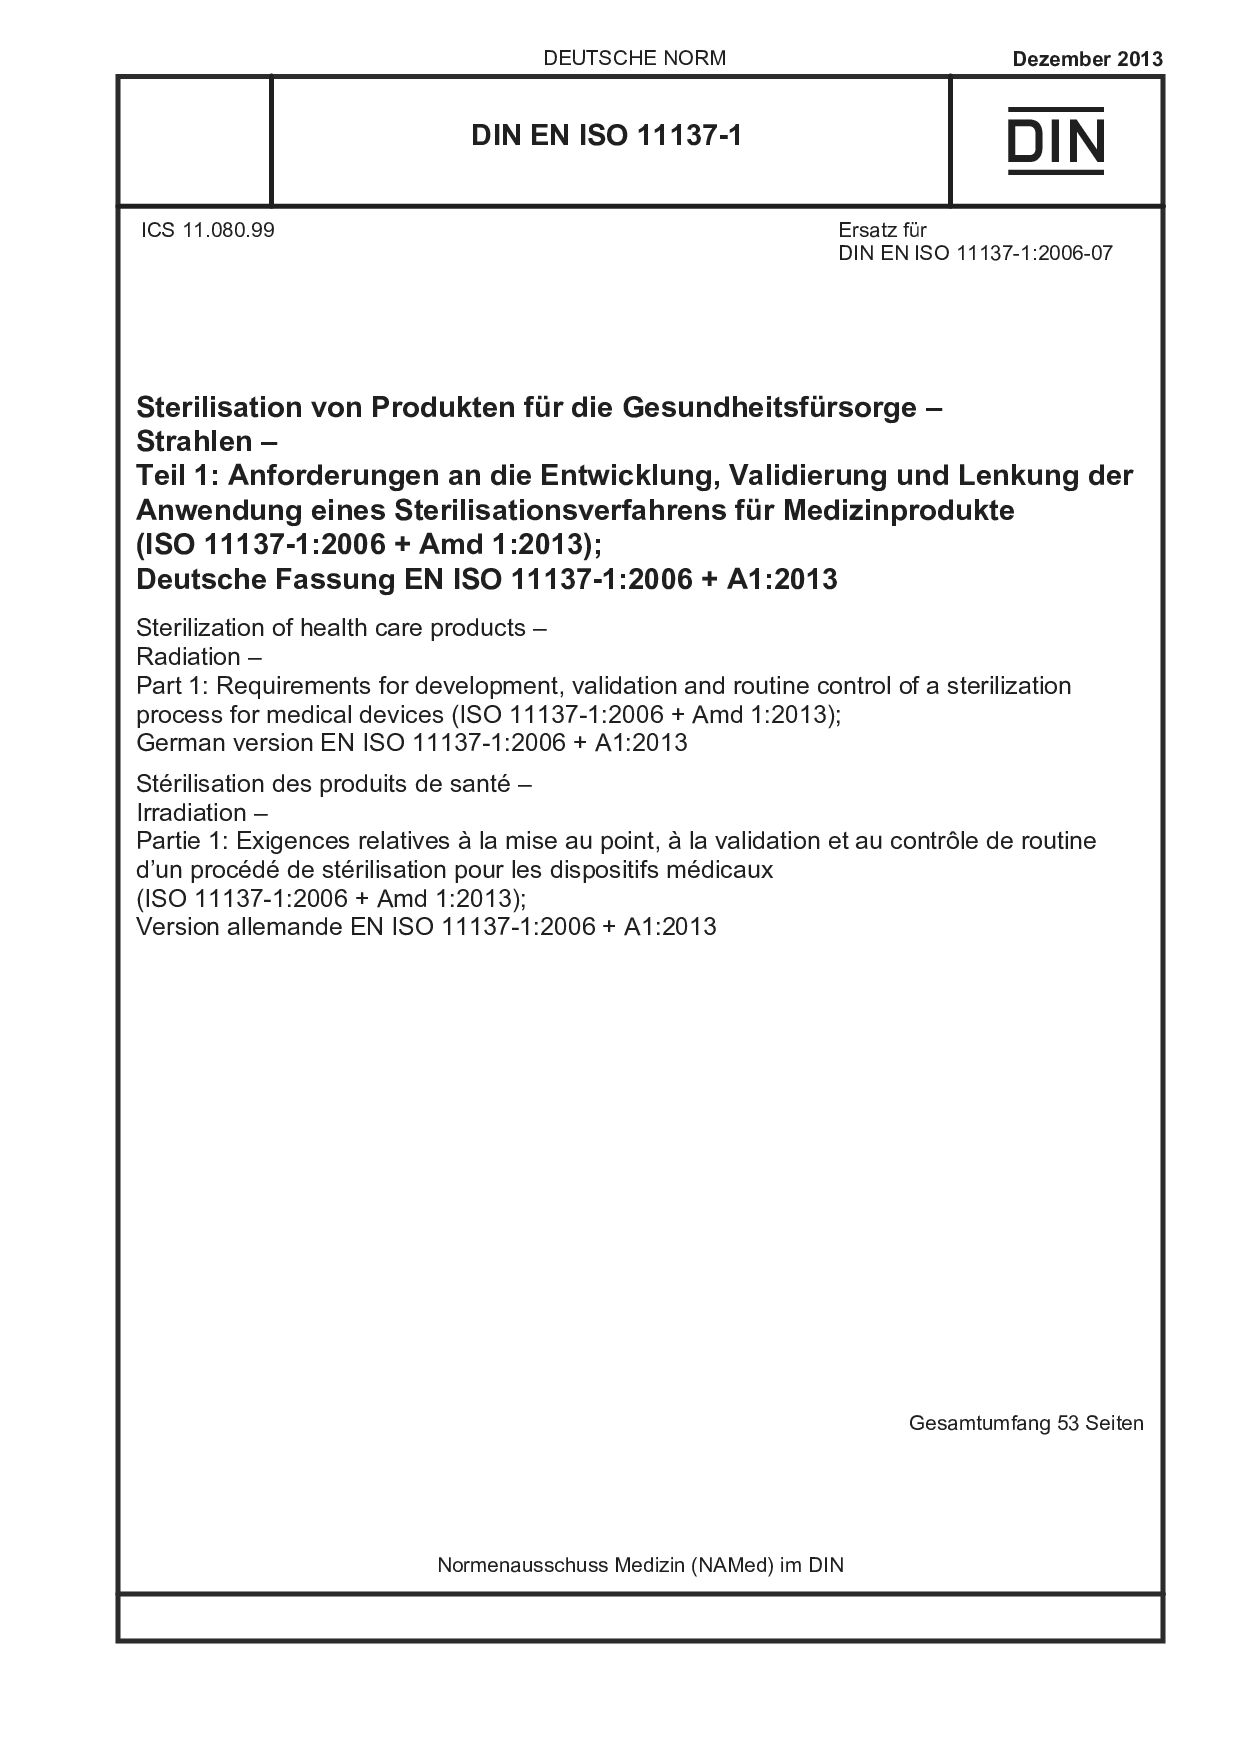 DIN EN ISO 11137-1:2013封面图